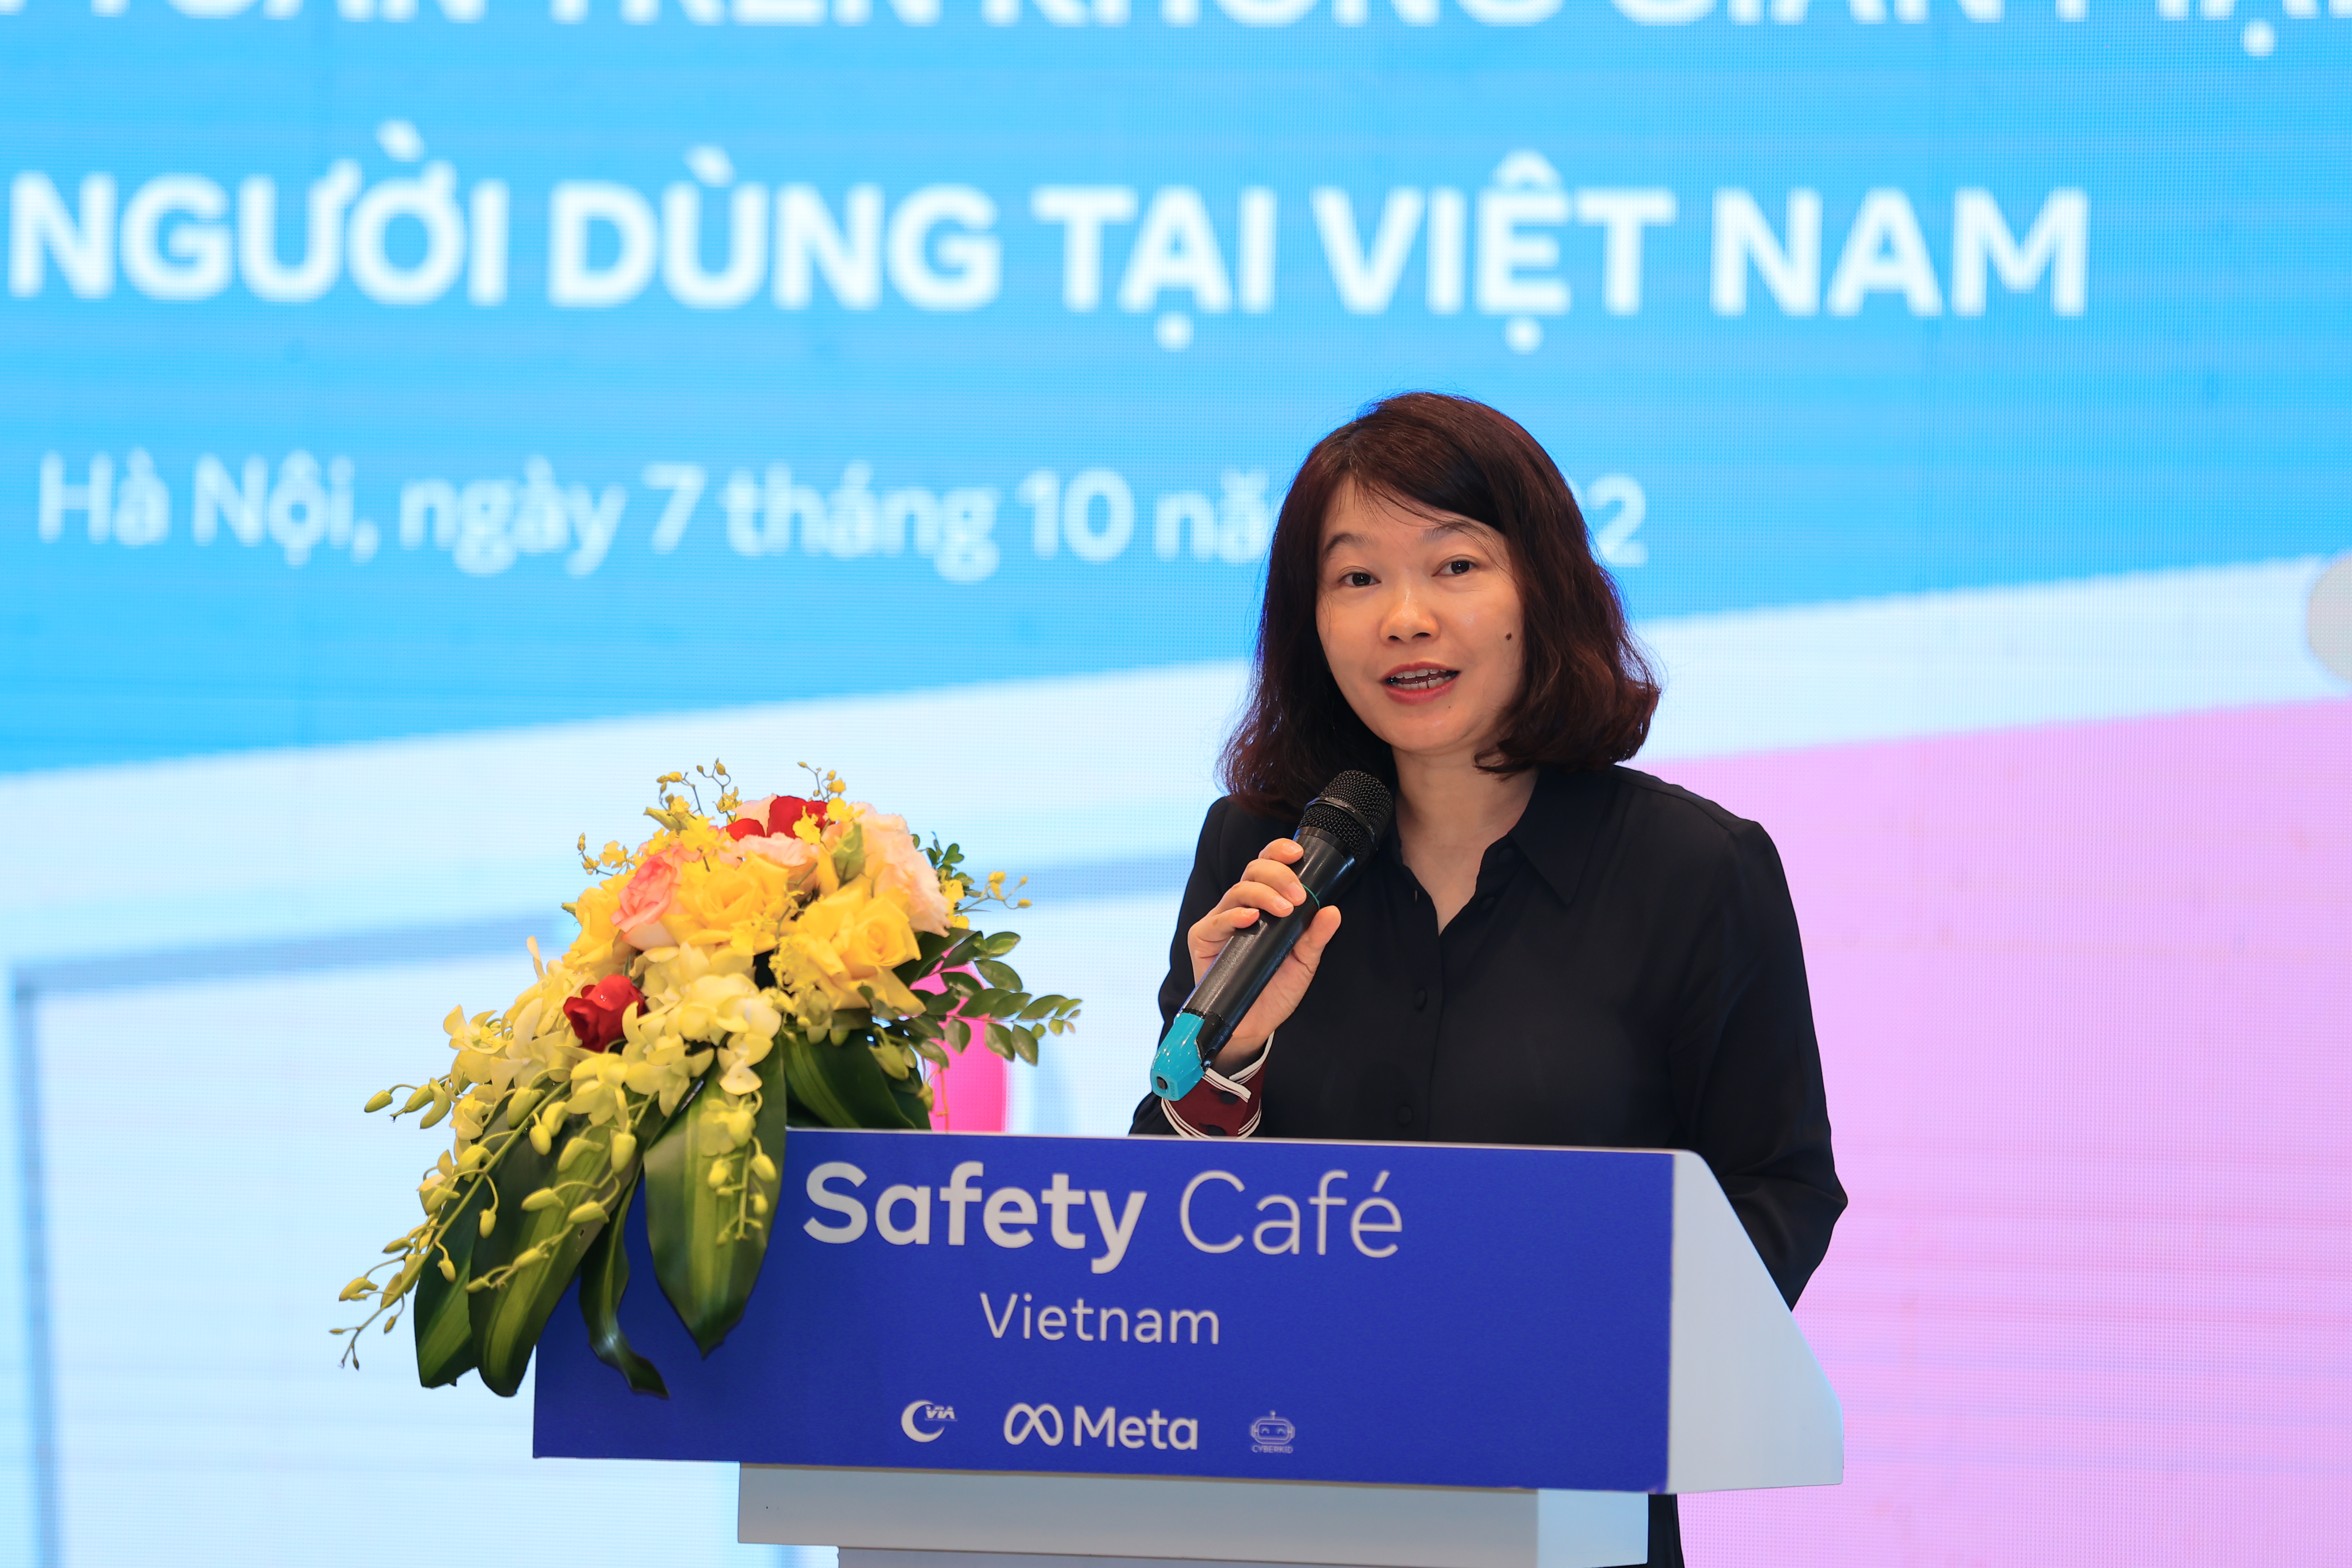 Safety Café Vietnam - Không gian thực nghiệm về an toàn trực tuyến và quyền riêng tư